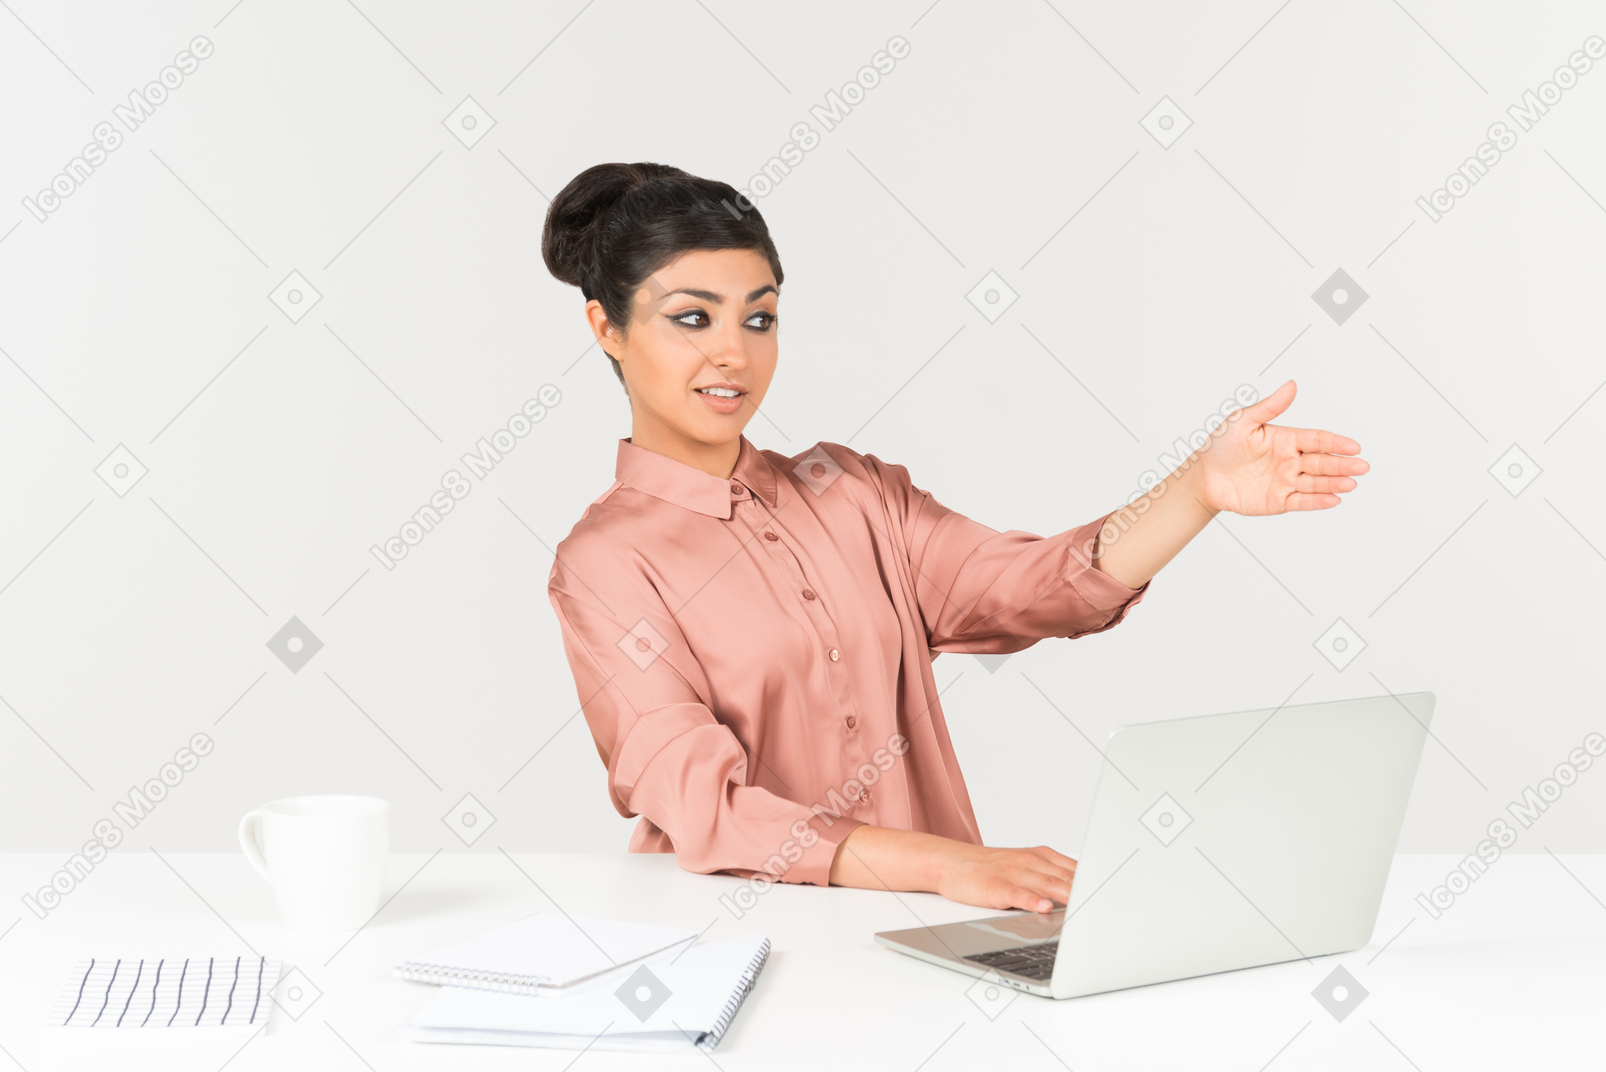 Giovane donna indiana seduto alla scrivania e indicando con una mano